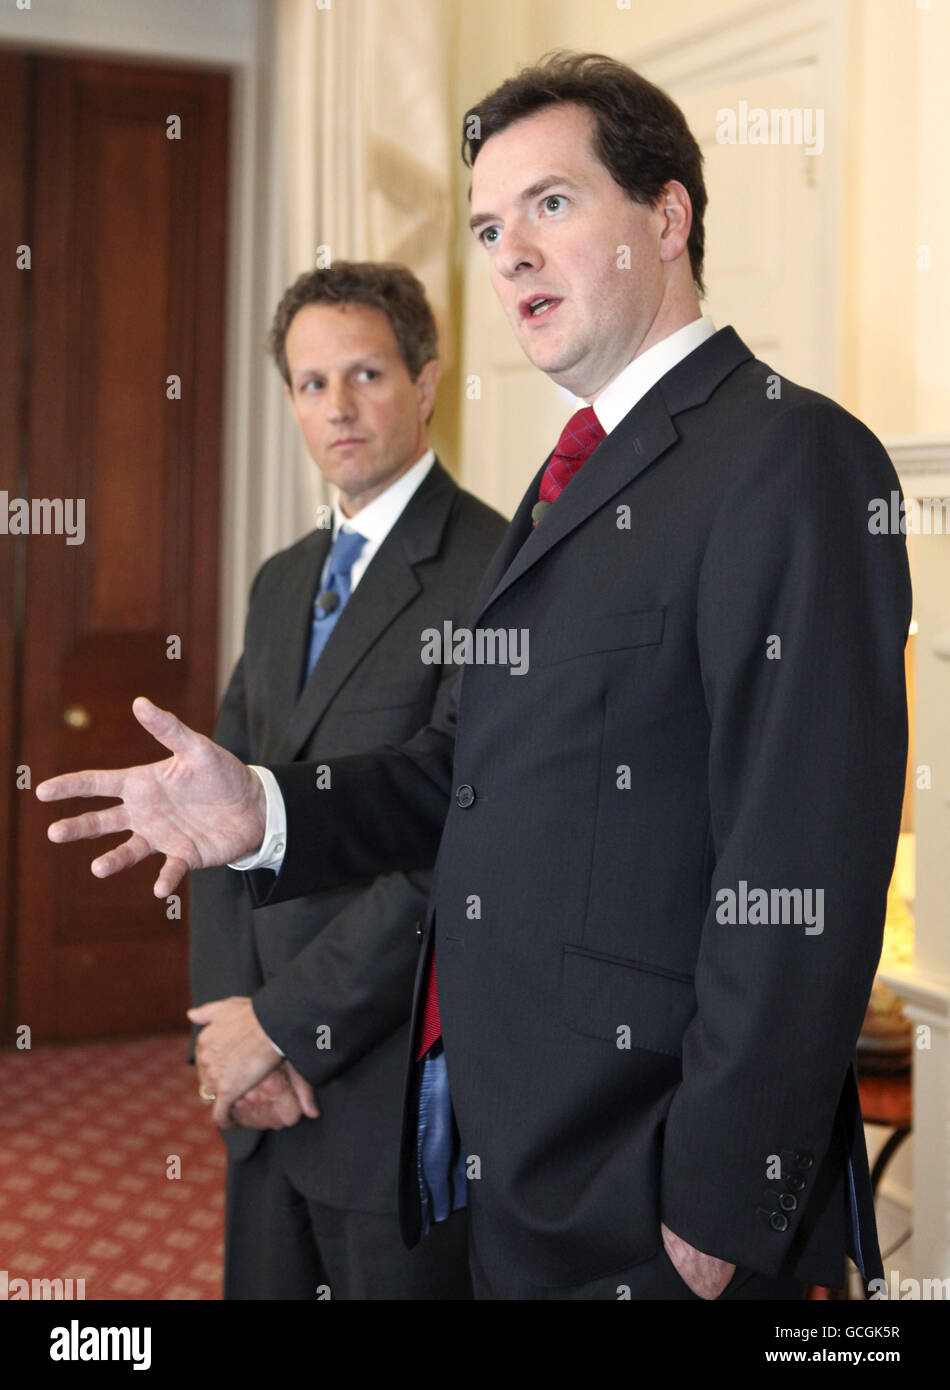 Timothy Geithner, segretario del Tesoro degli Stati Uniti, guarda come George Osborne, cancelliere britannico dello scacchiere, gesti durante una conferenza stampa congiunta al 11 Downing Street, a Londra, Regno Unito Foto Stock